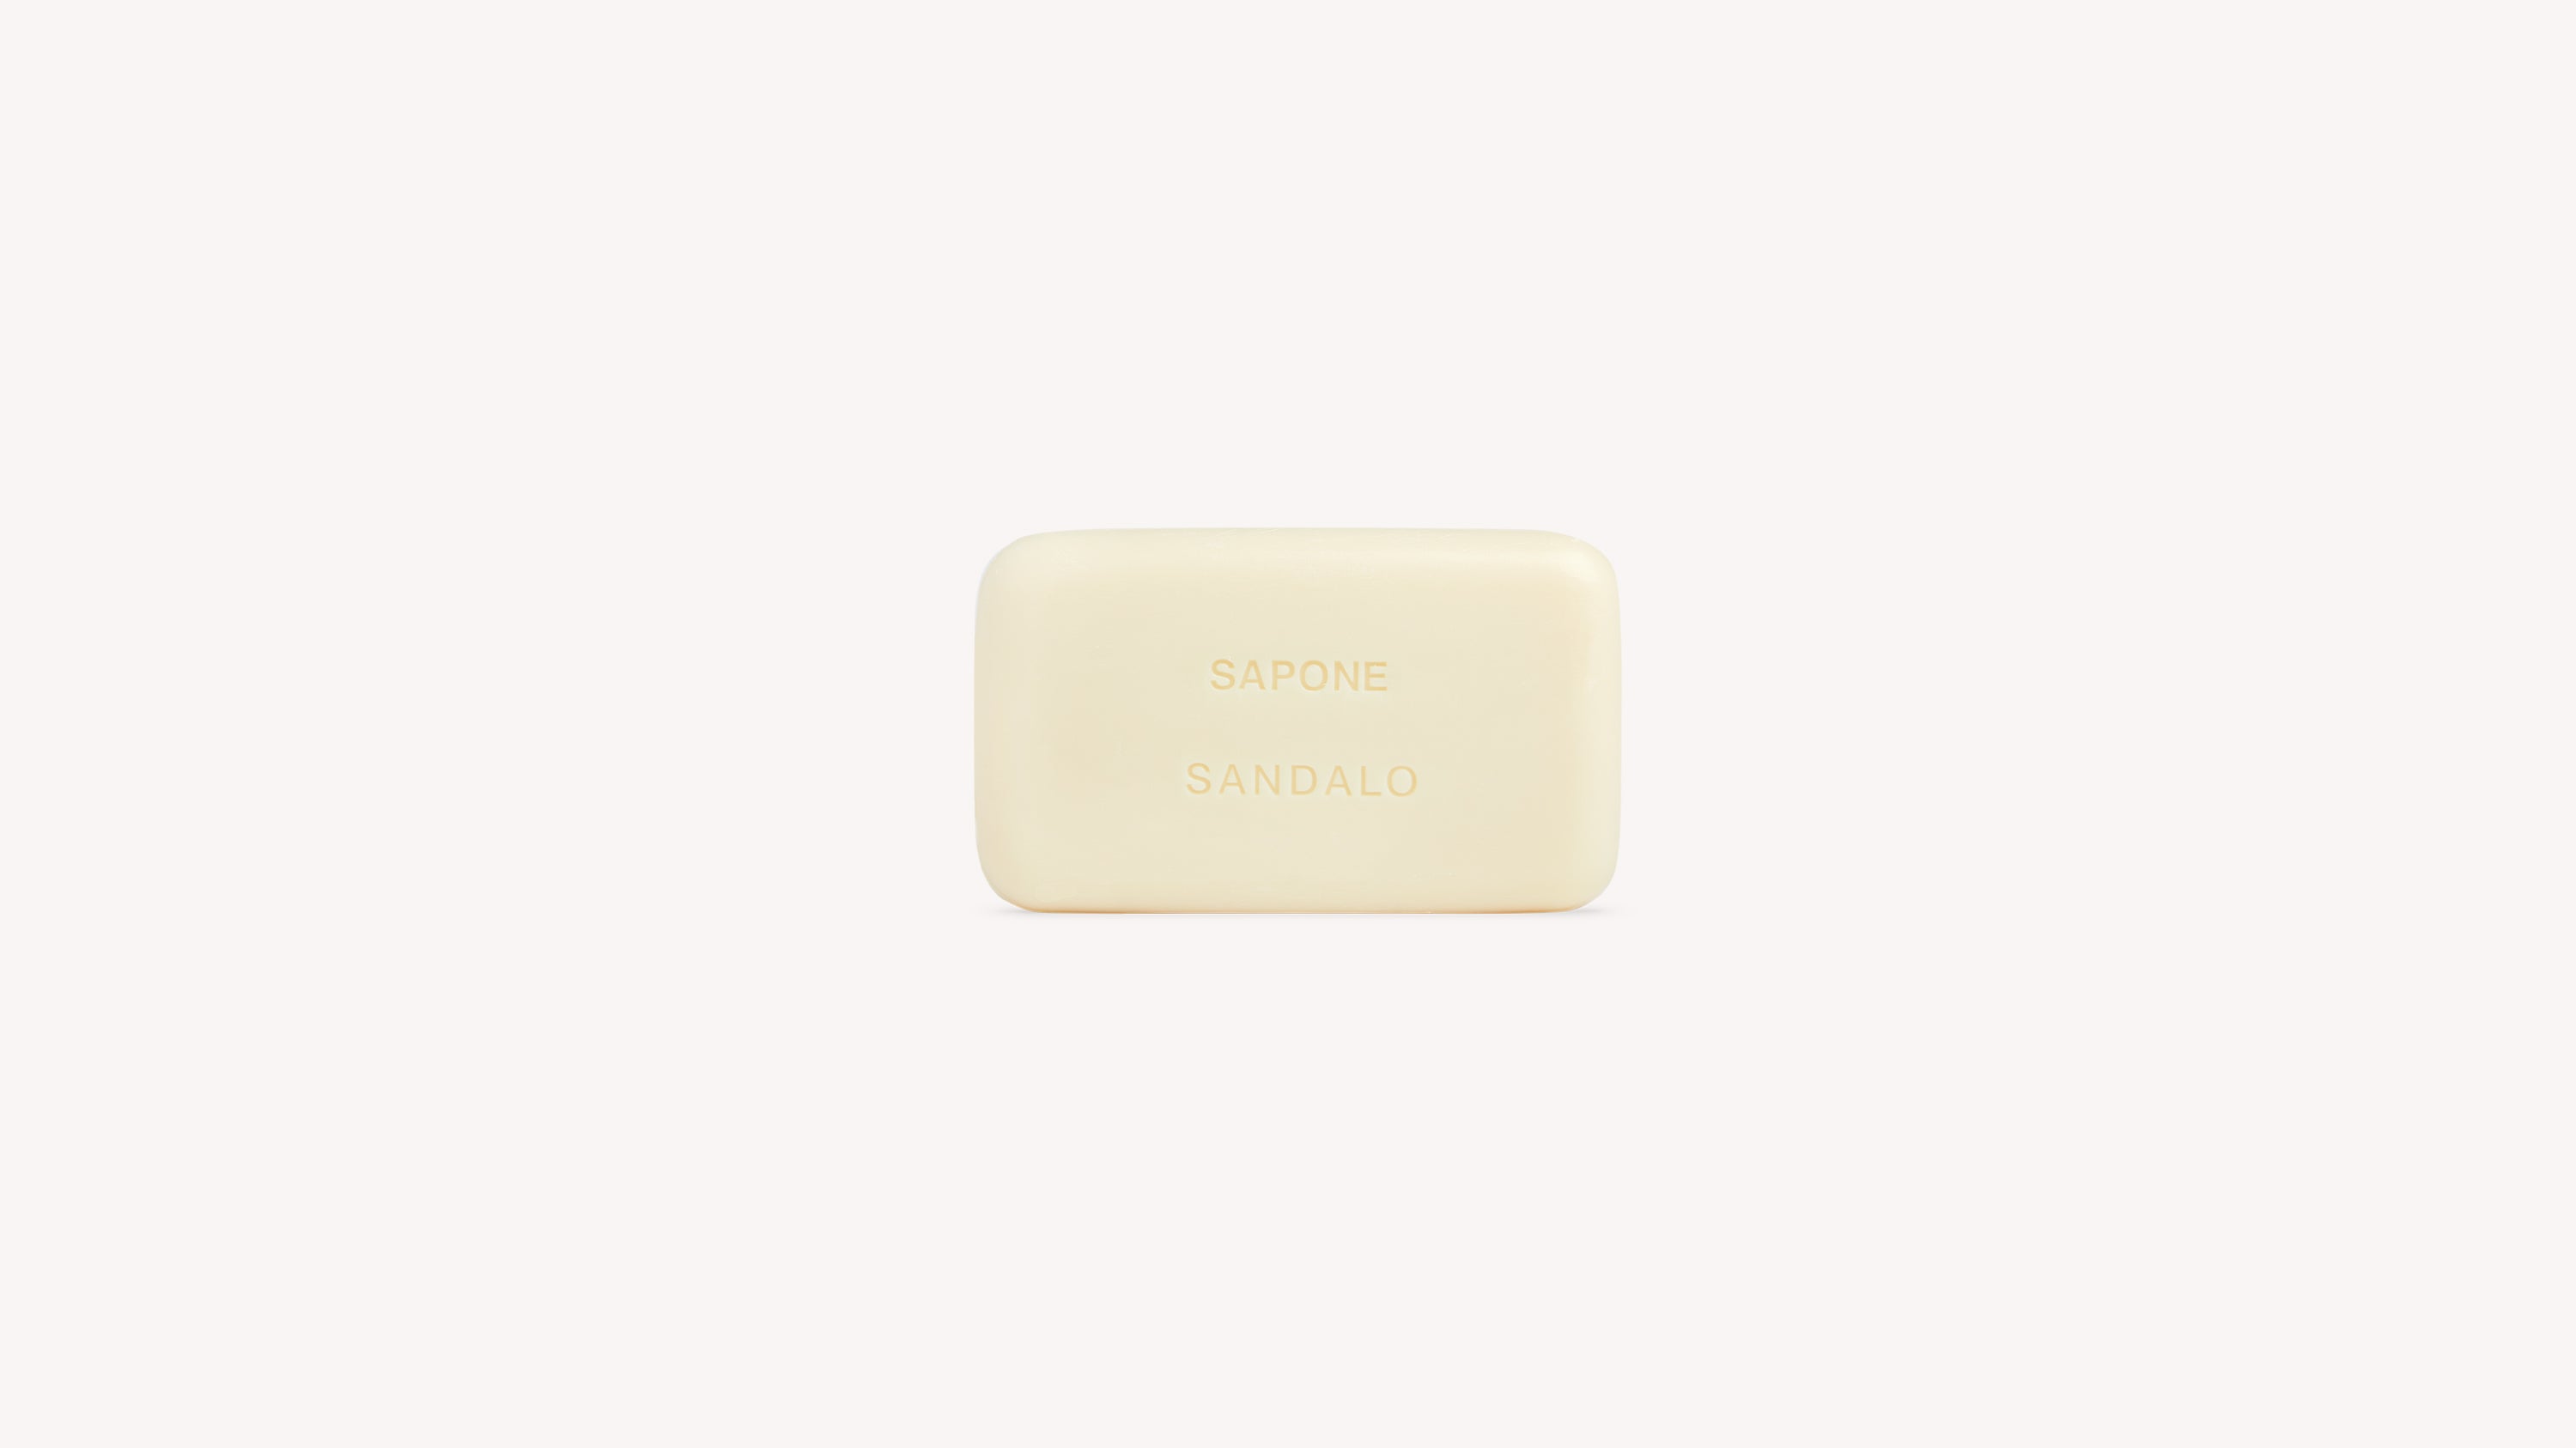 Sandalo Soap